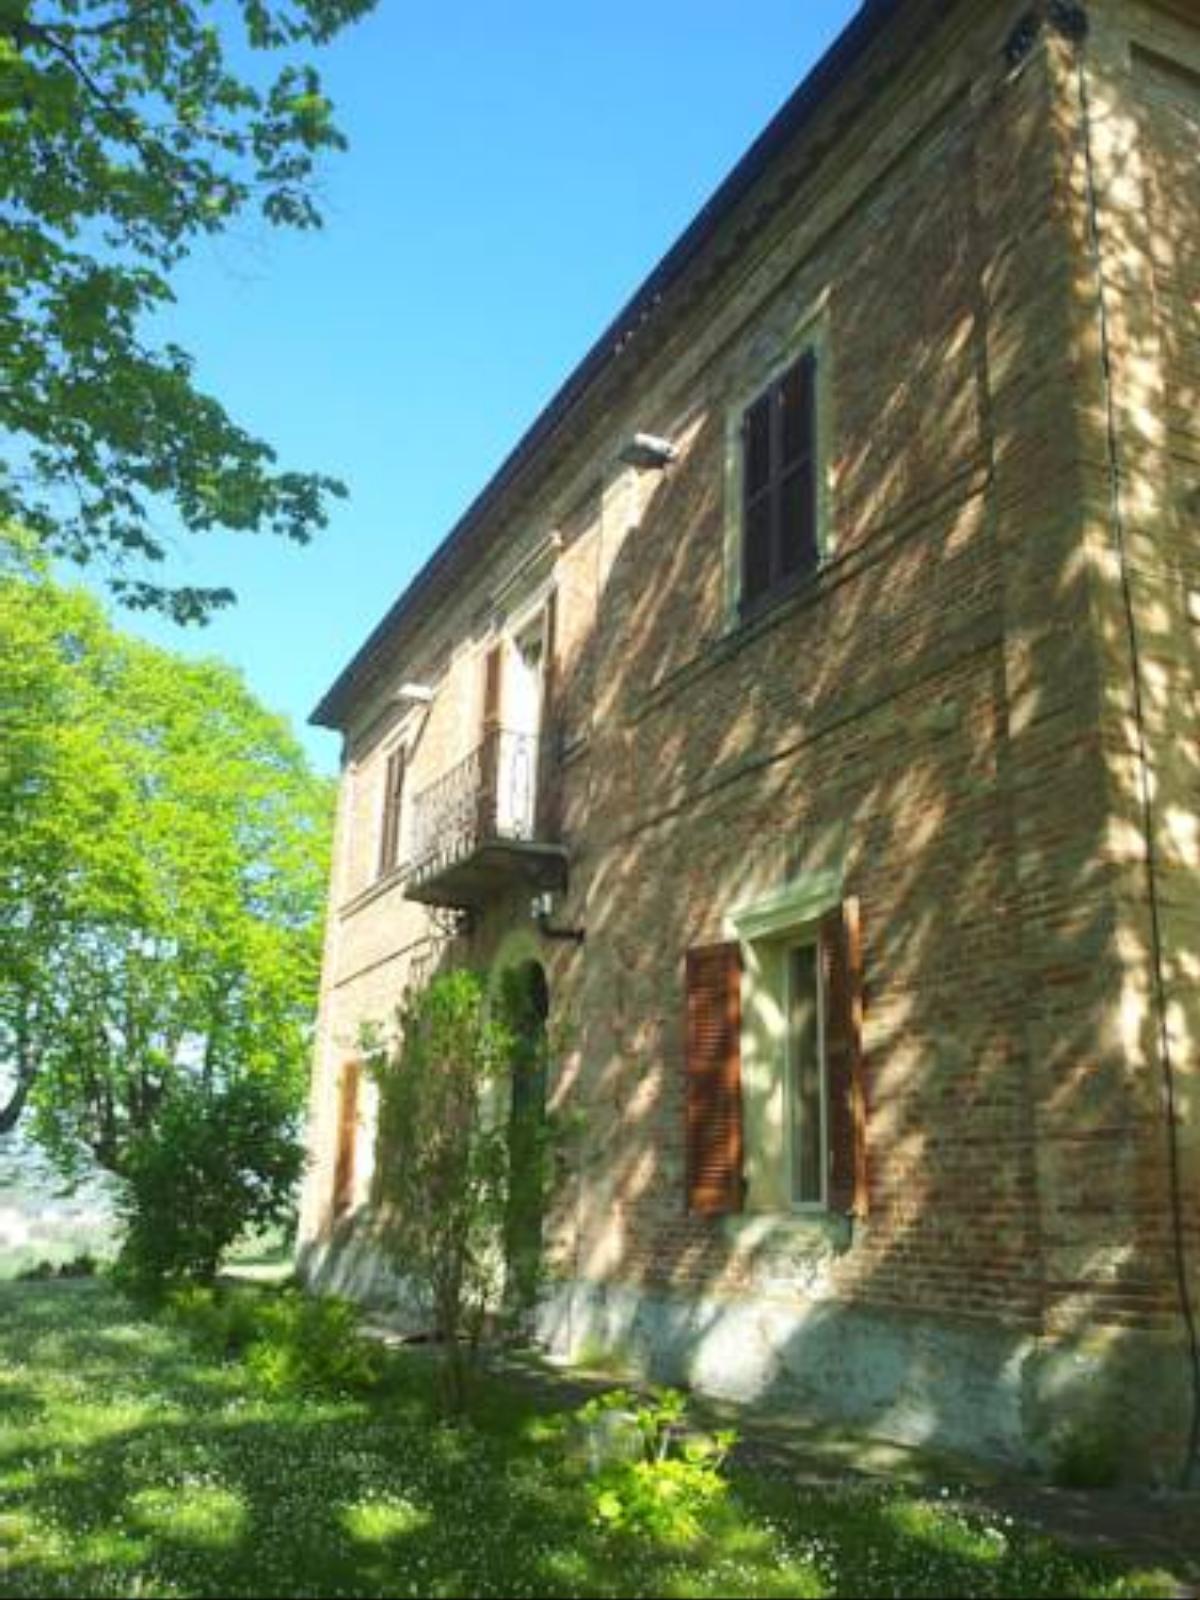 Villa Dei Tigli